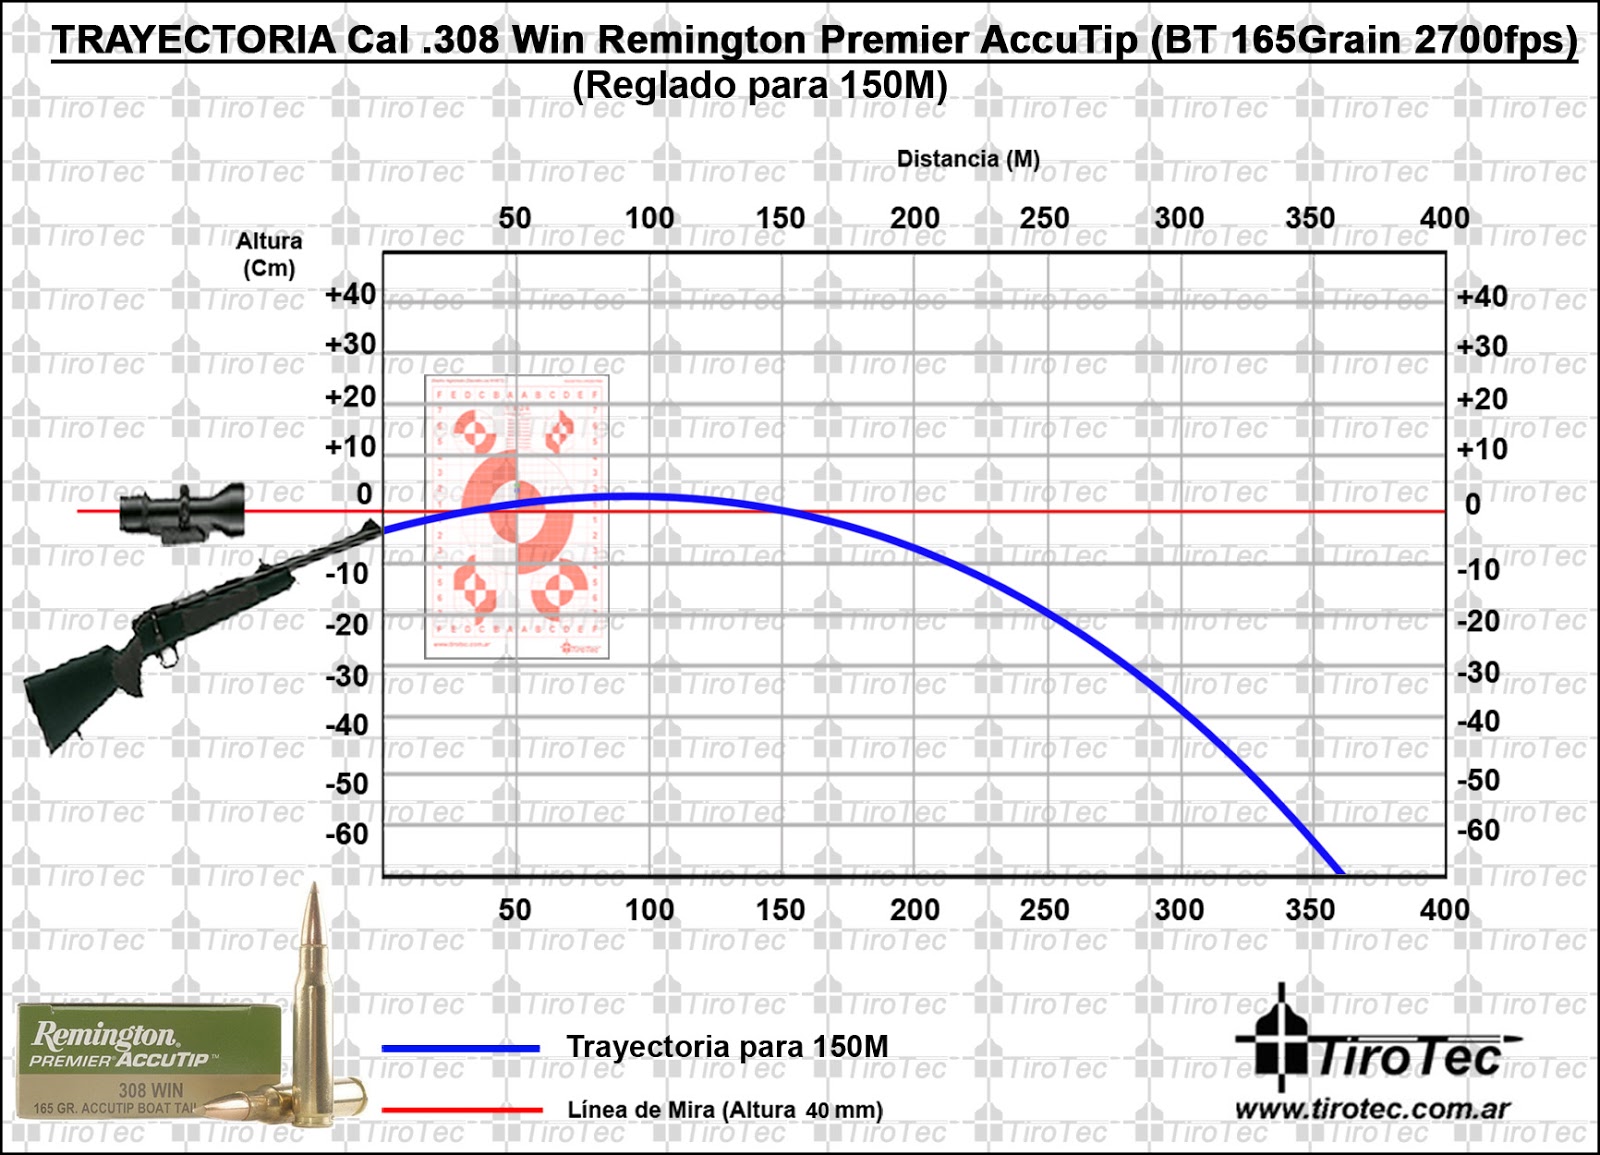 Tirotec: Calibre .308 Win Remington Premier AccuTip Boat Tail 165Grain